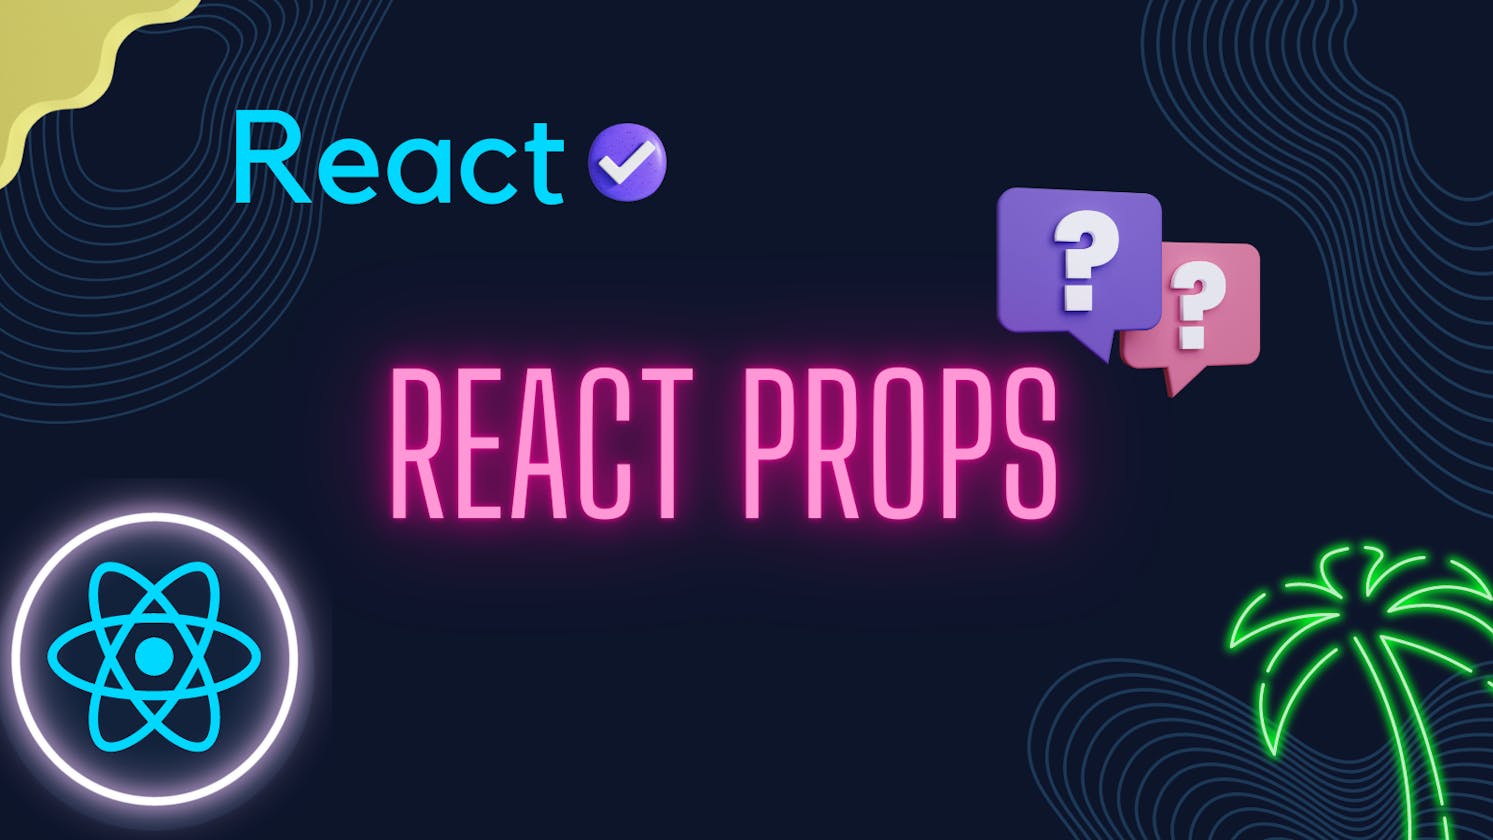 React props for beginner